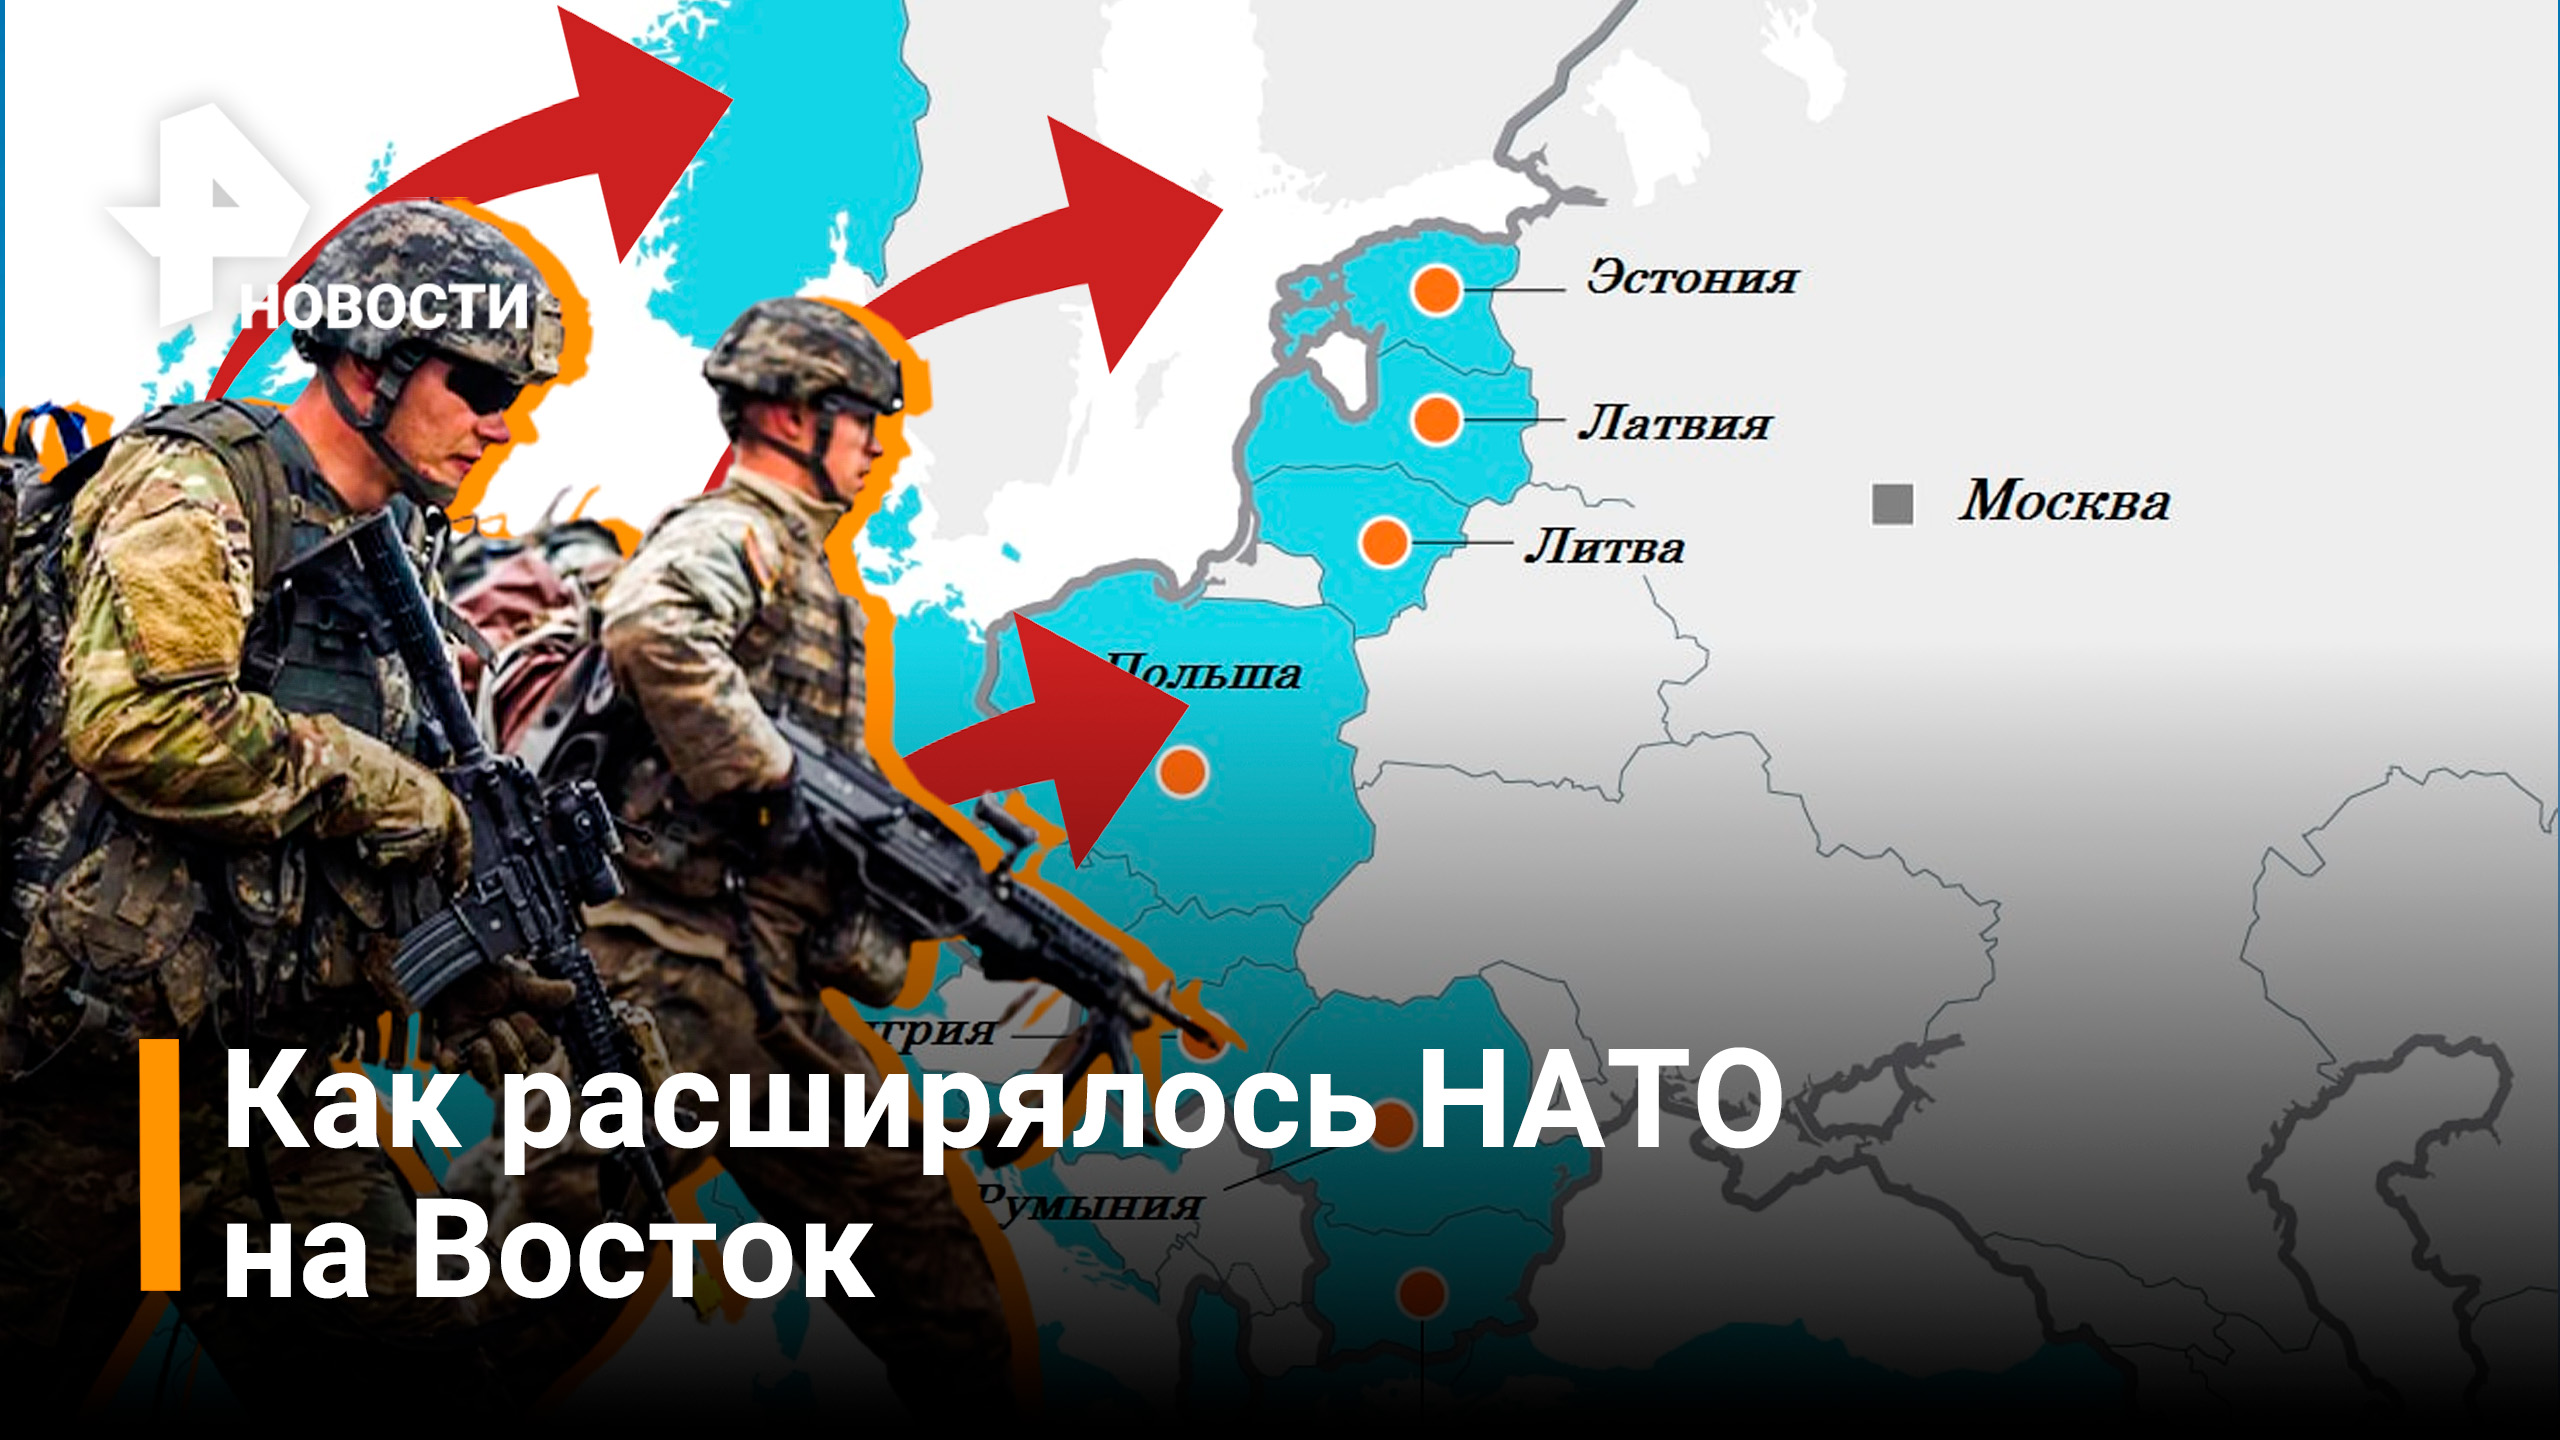 Территория НАТО. Расширение НАТО на Восток.